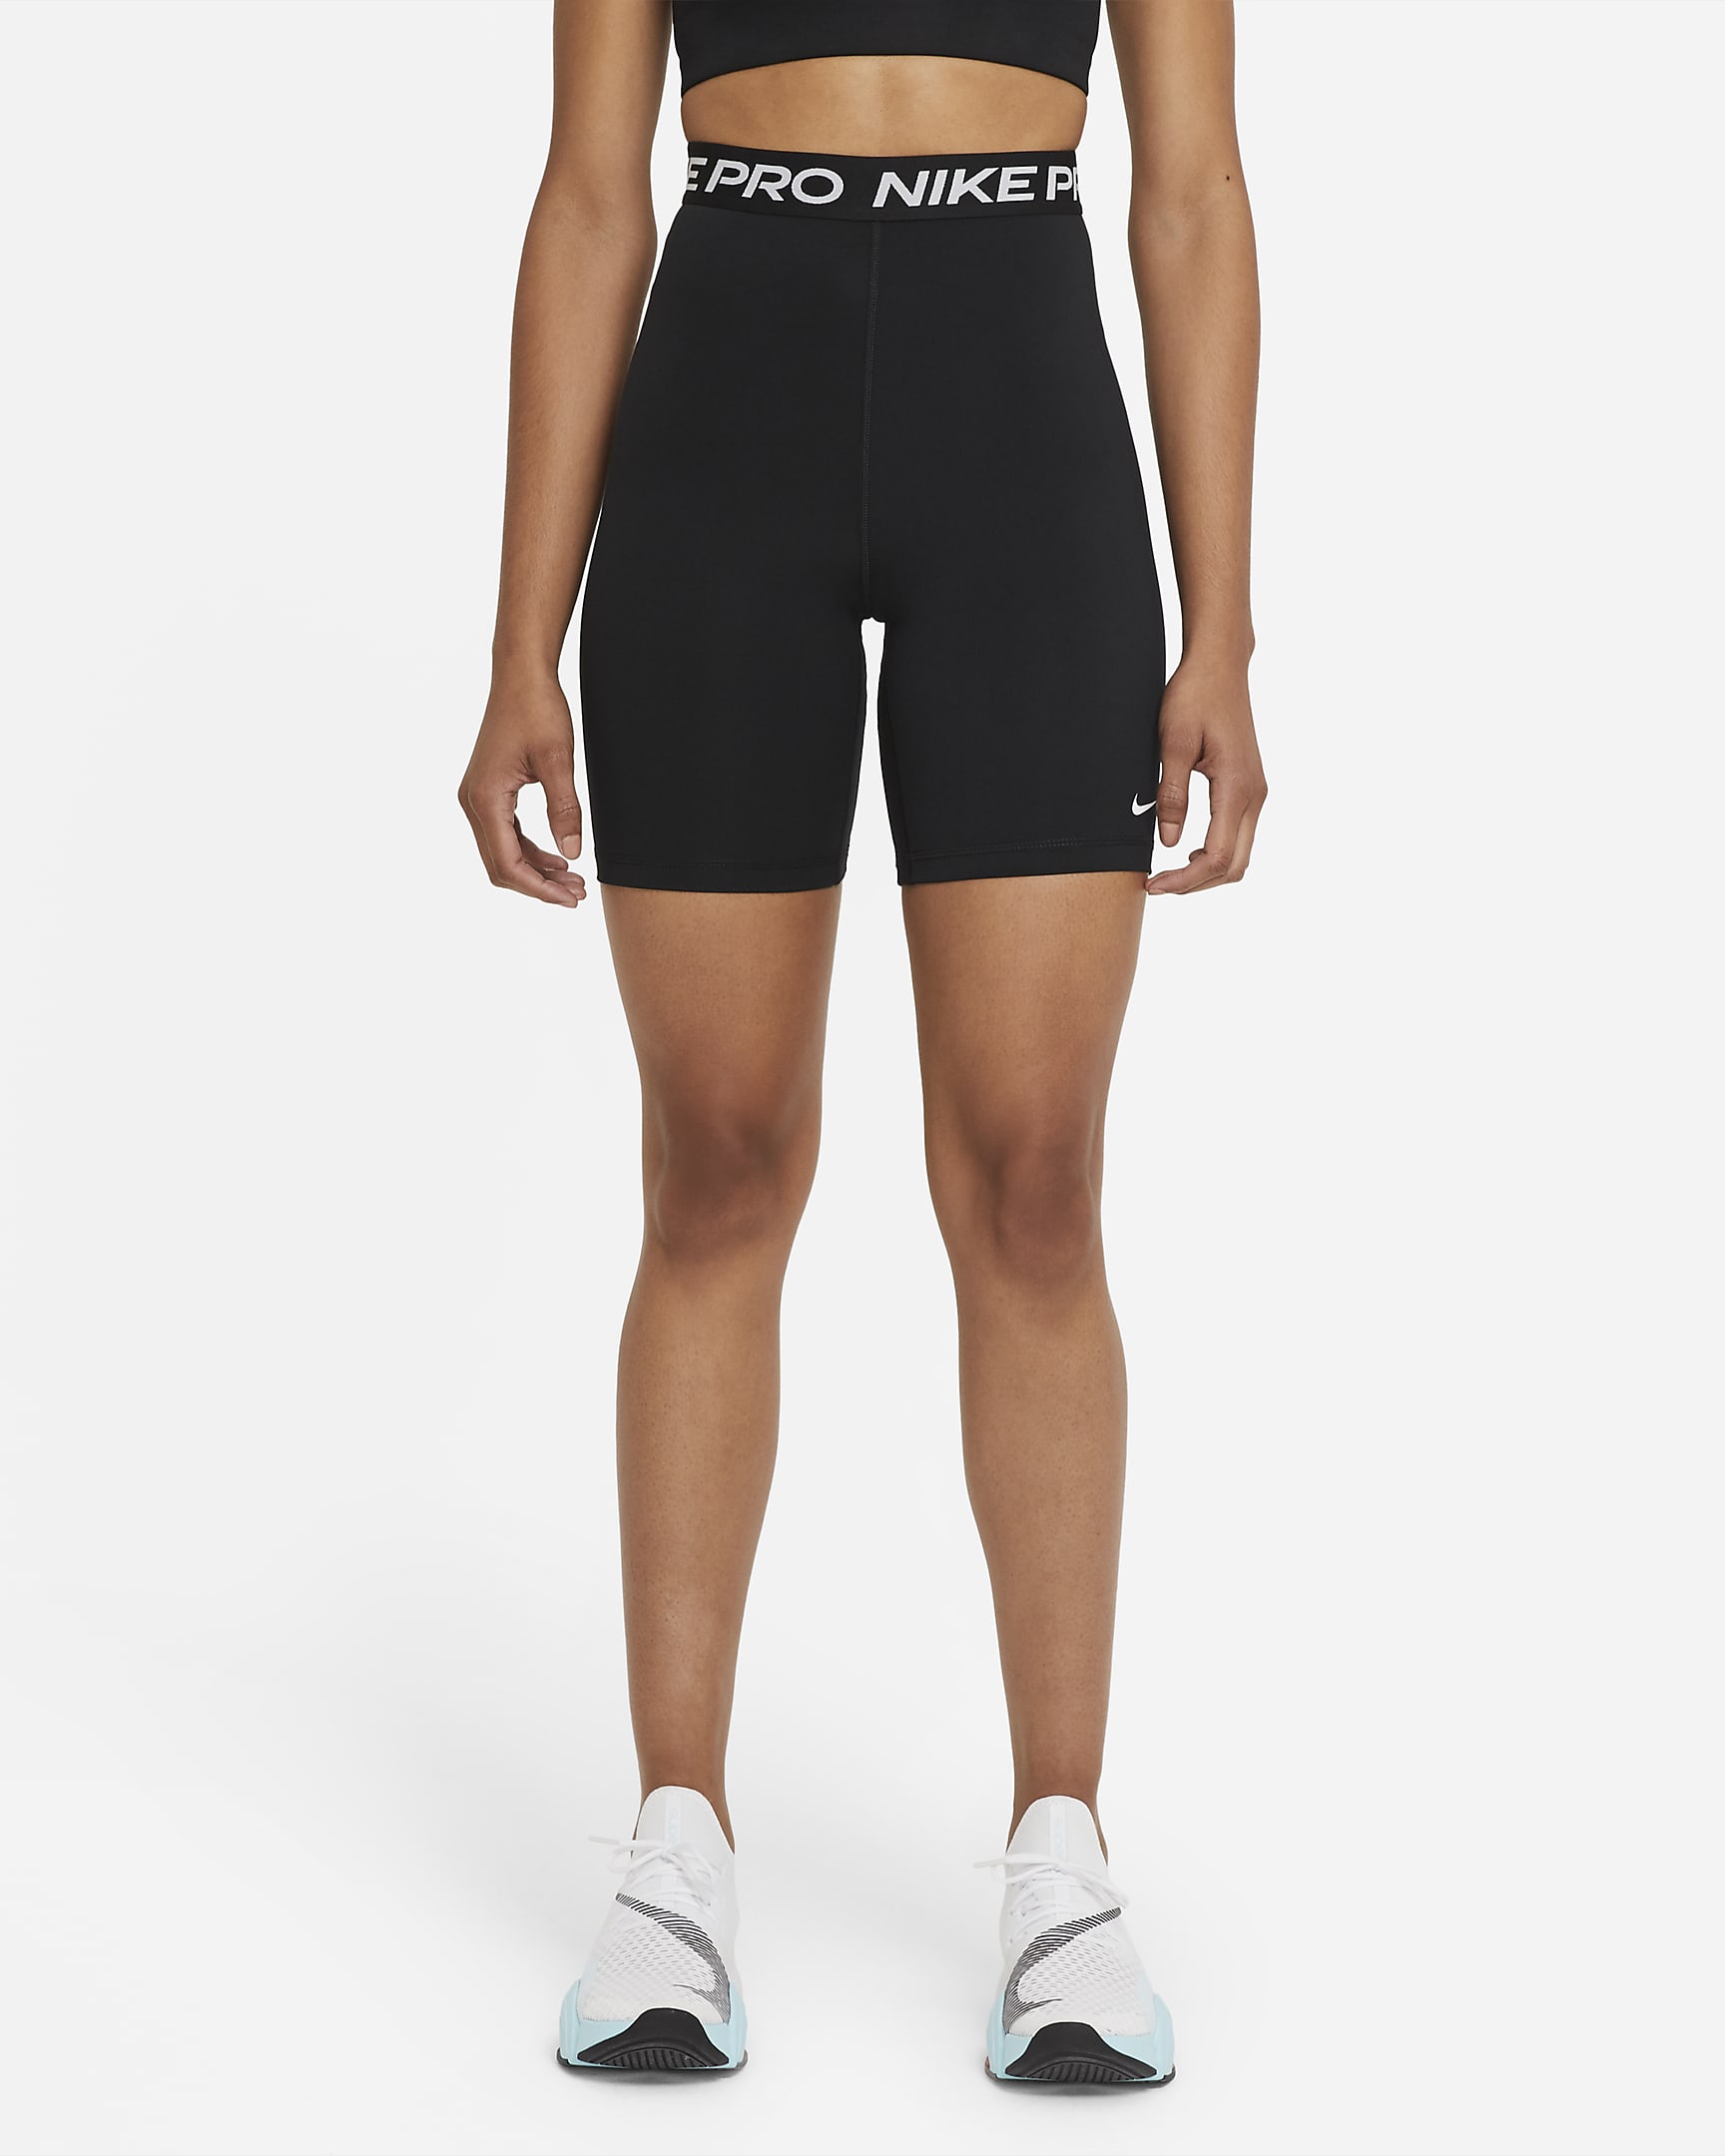 Nike Pro 365 Damen-Leggings mit hohem Taillenbund (ca. 18 cm) - Schwarz/Weiß